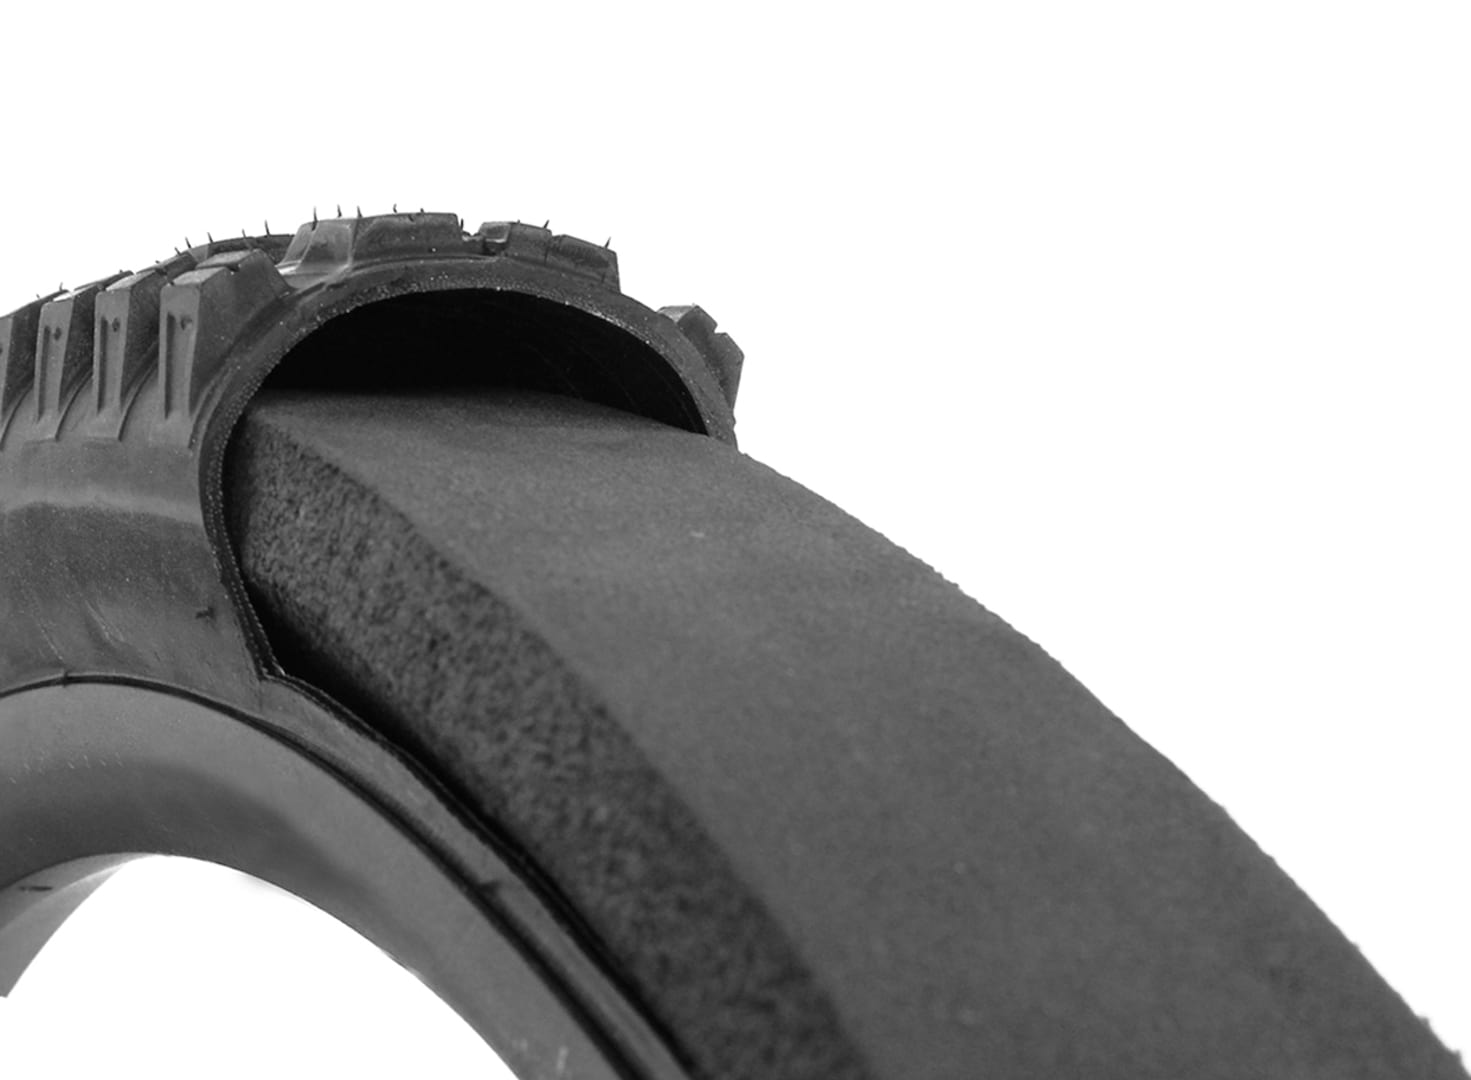 panzer tubeless insert tyre cutaway